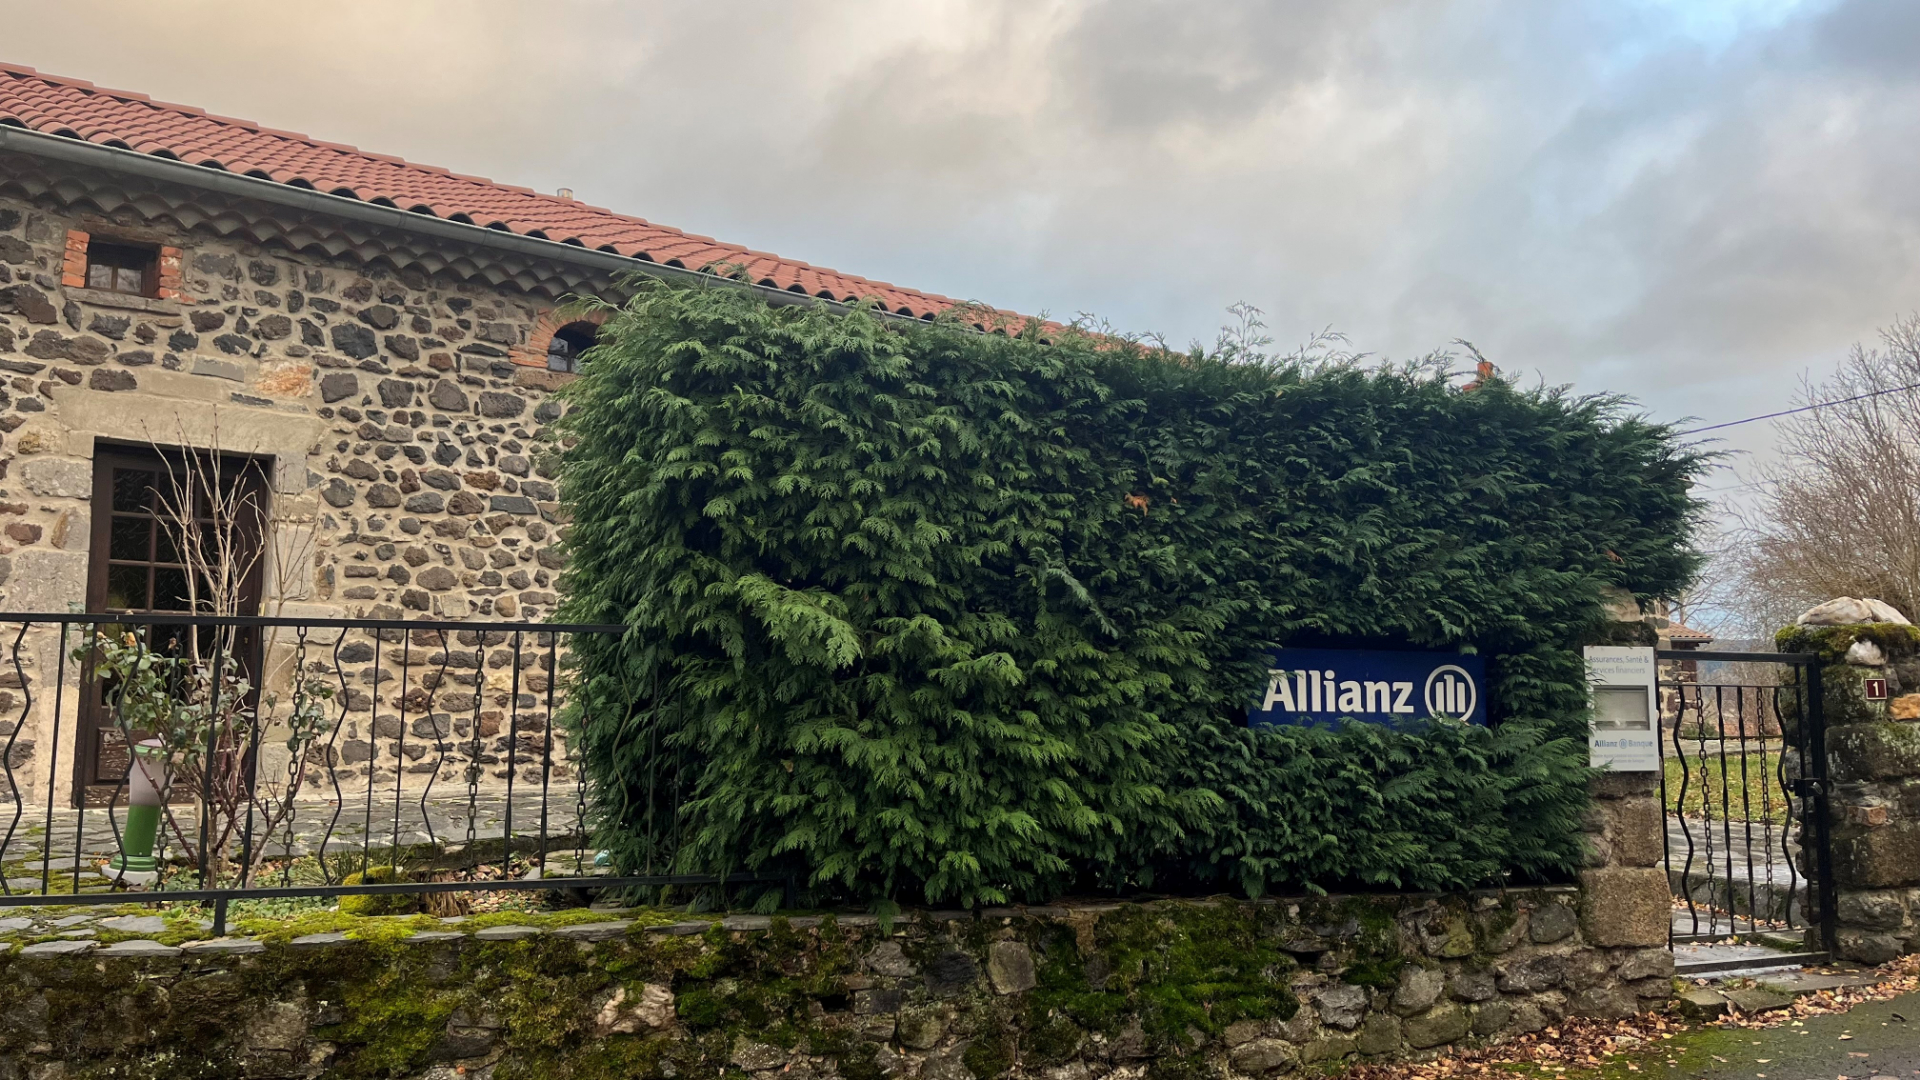 Allianz PUY LANGEAC - Franck TOURETTE